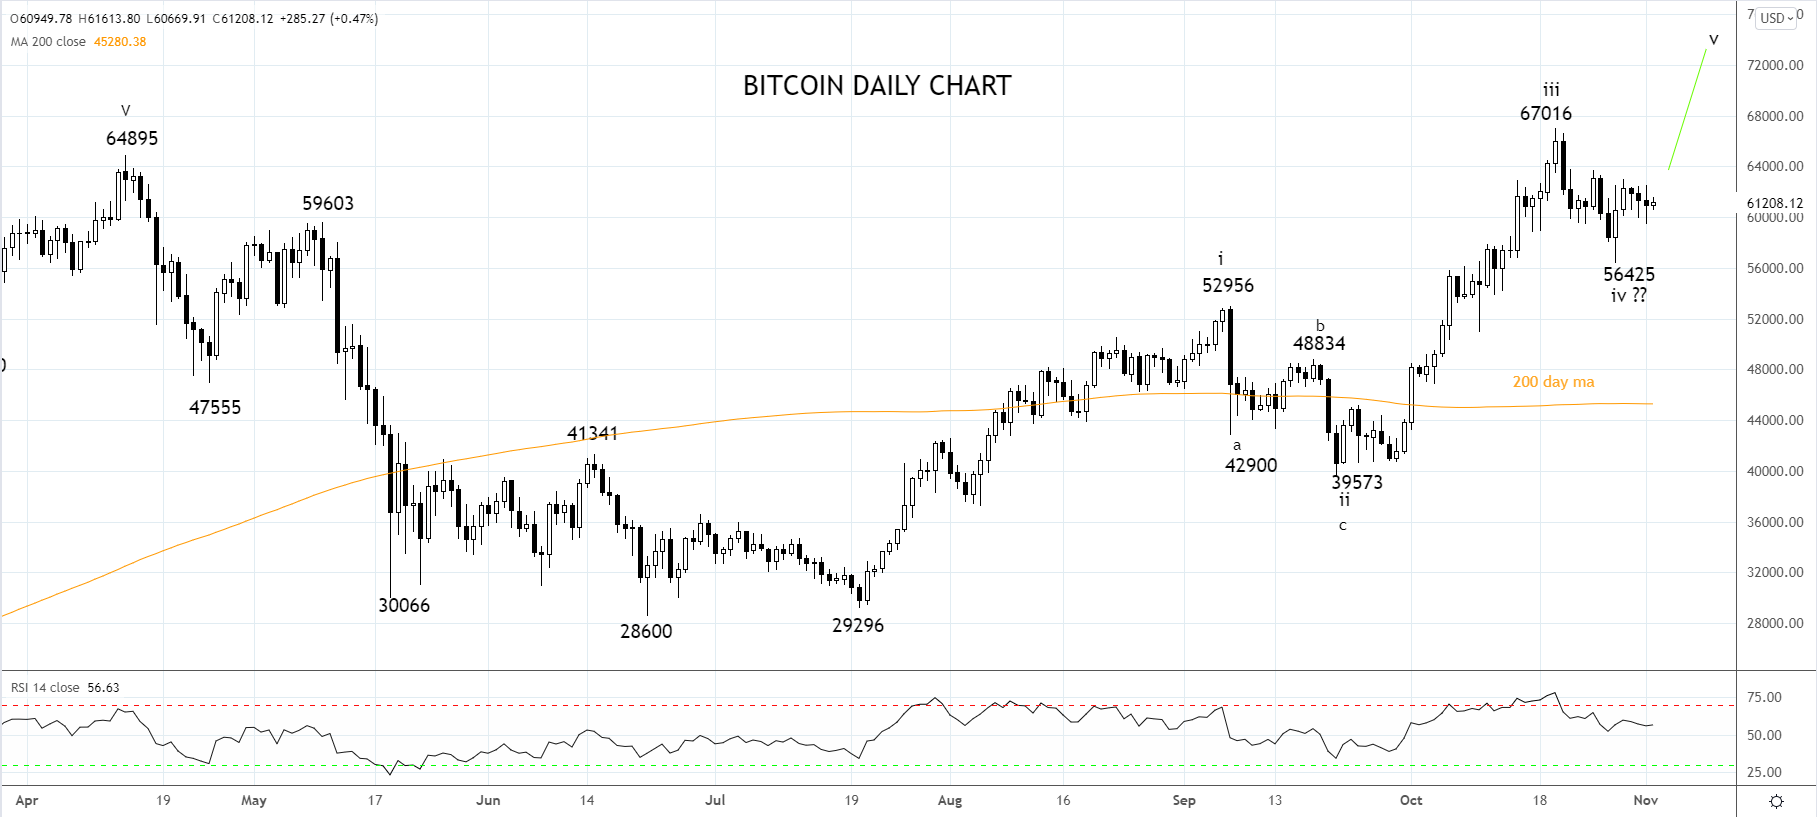 Bitcoin Daily Chart 2nd of November